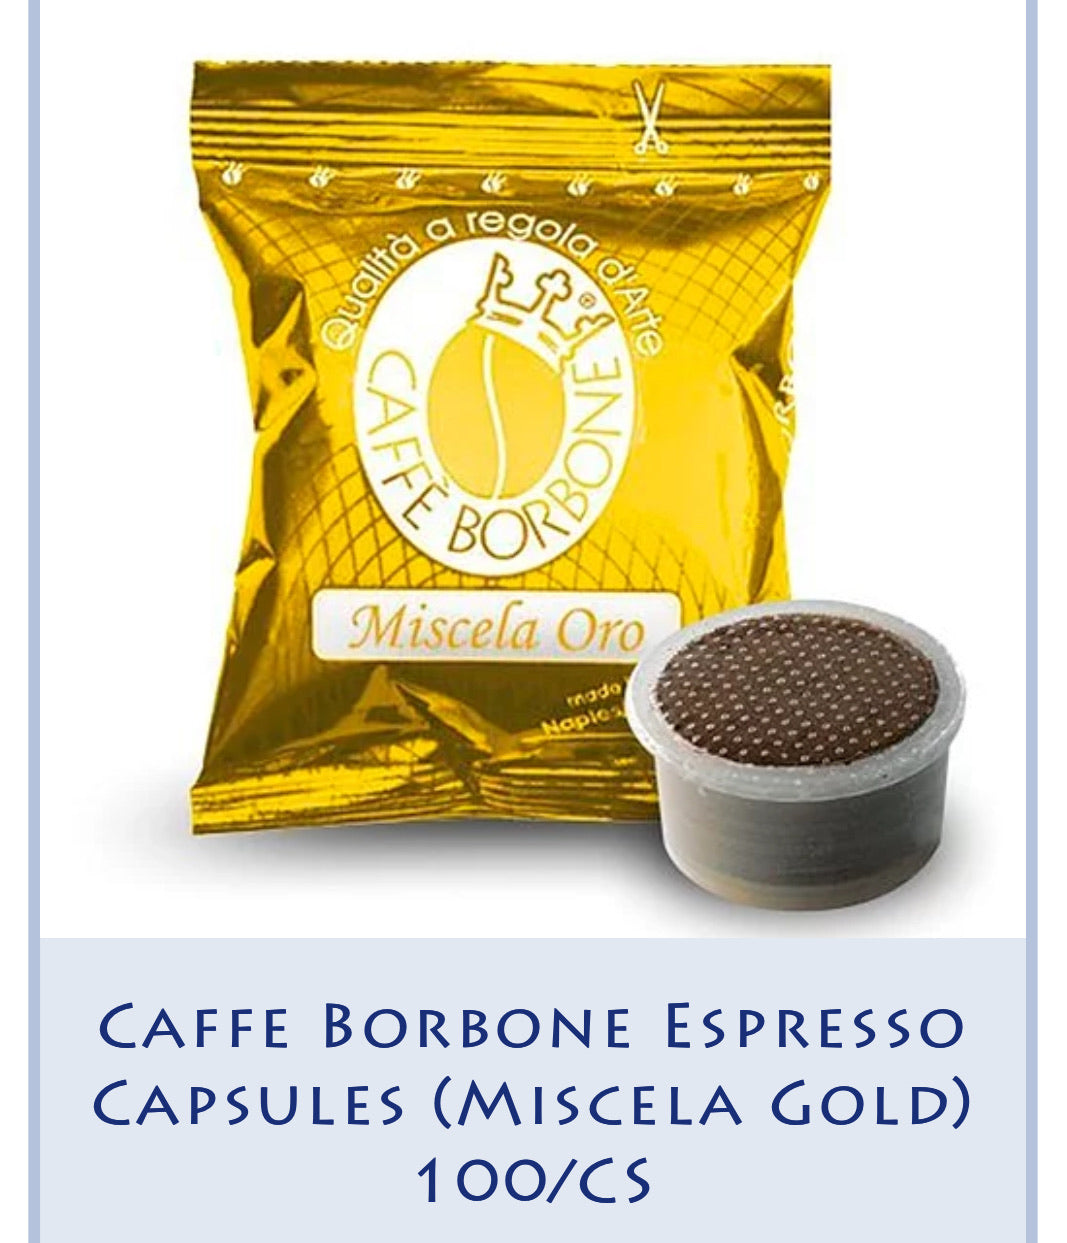 Caffe Borbone Espresso Capsules (Miscela Gold) 100/CS